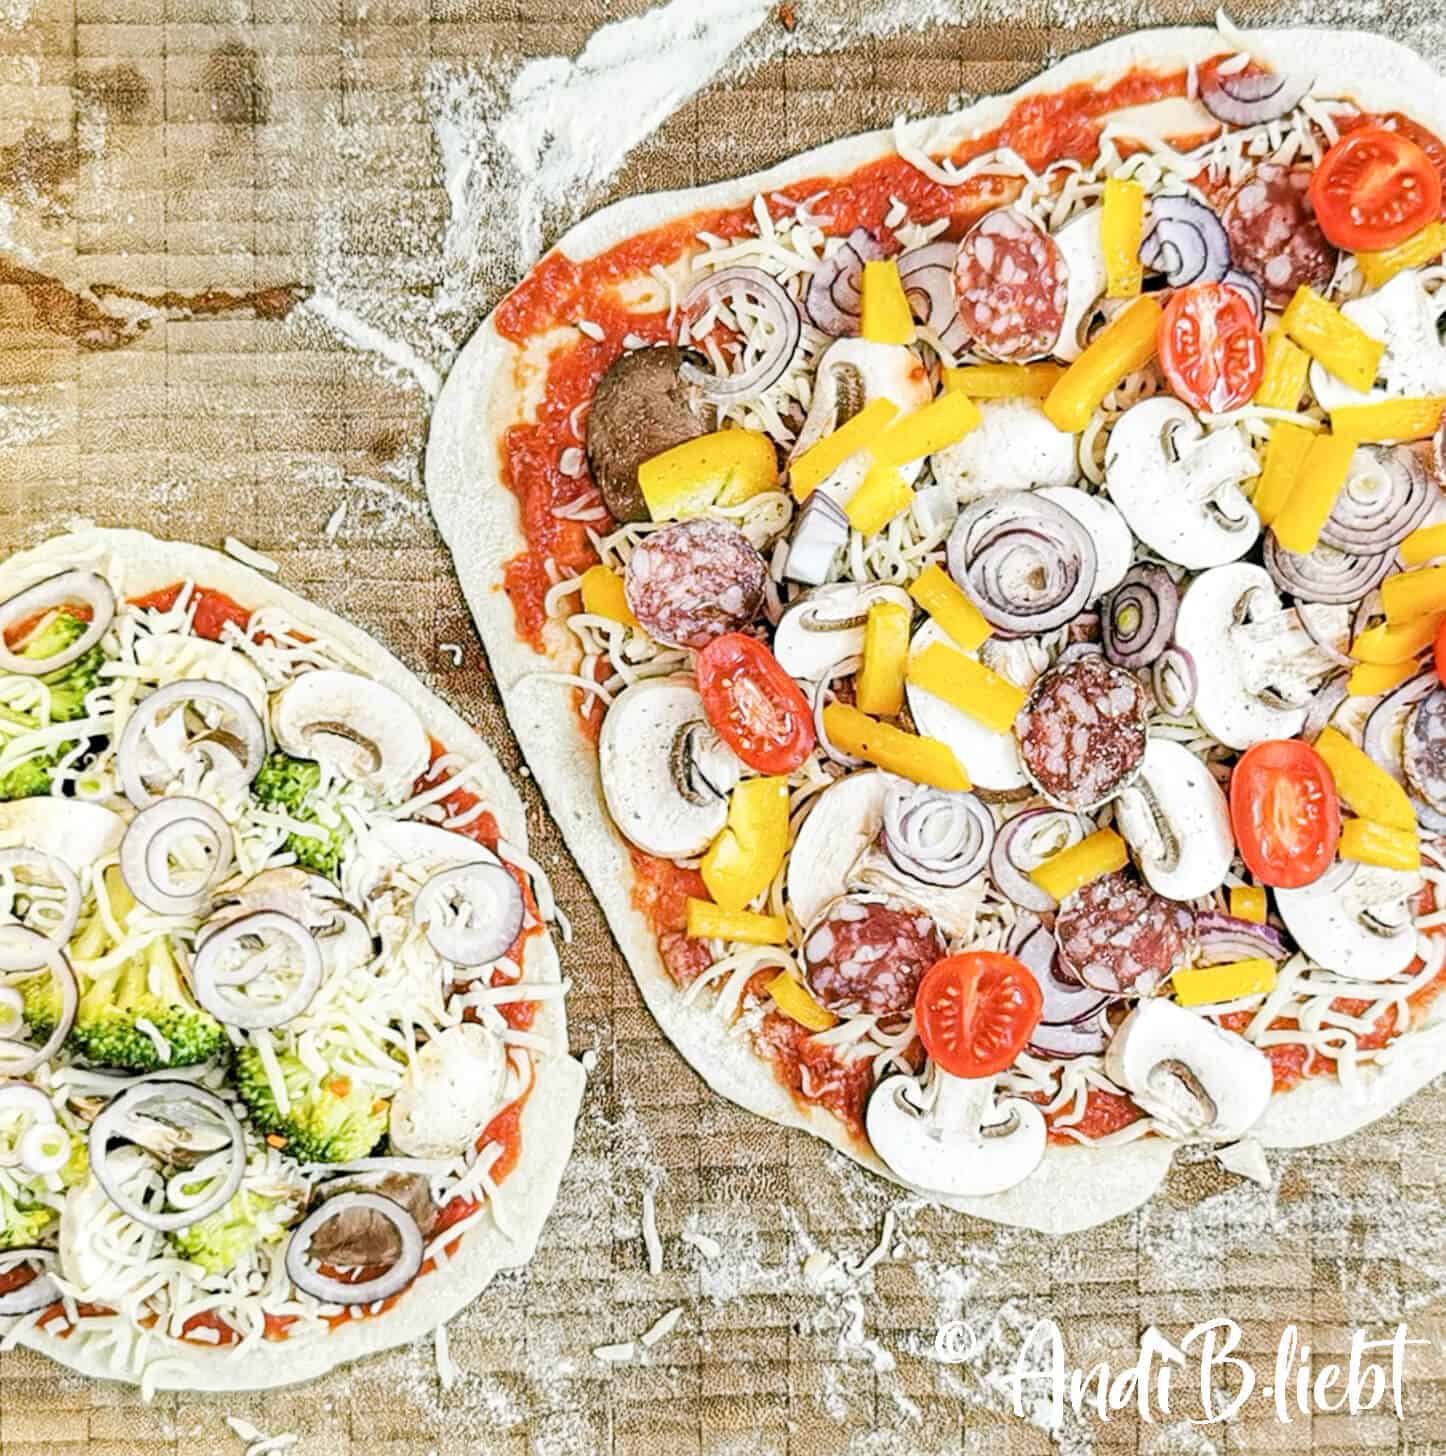 Pizzateig - das Grundrezept